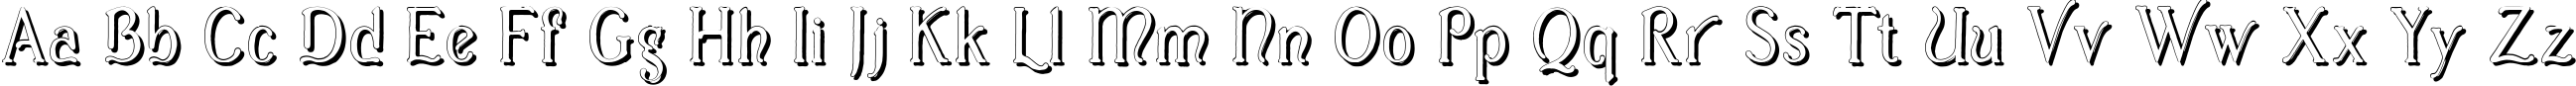 Пример написания английского алфавита шрифтом Casua_Shadow